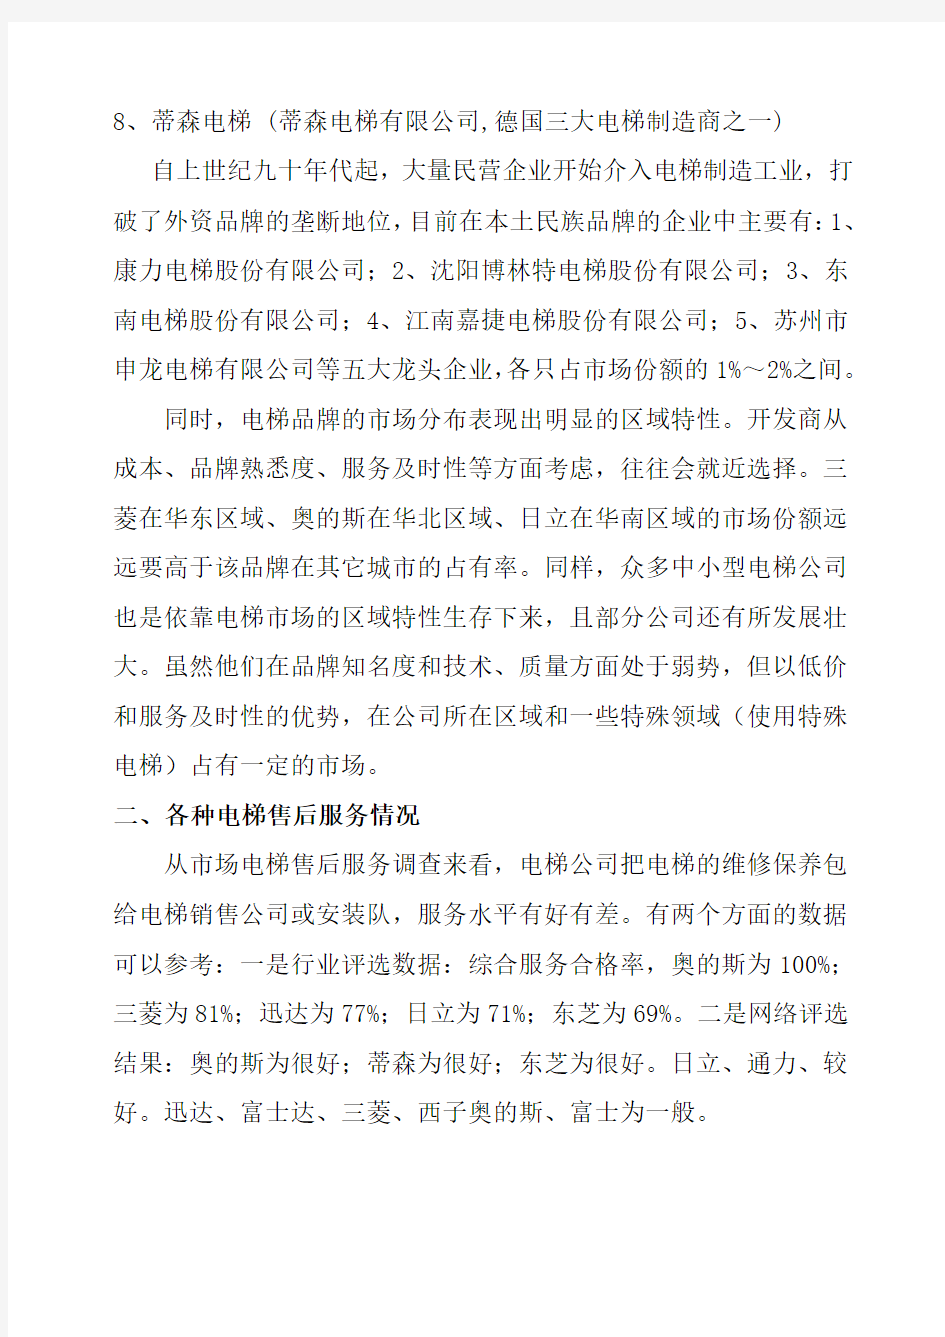 中国电梯市场调查报告剖析